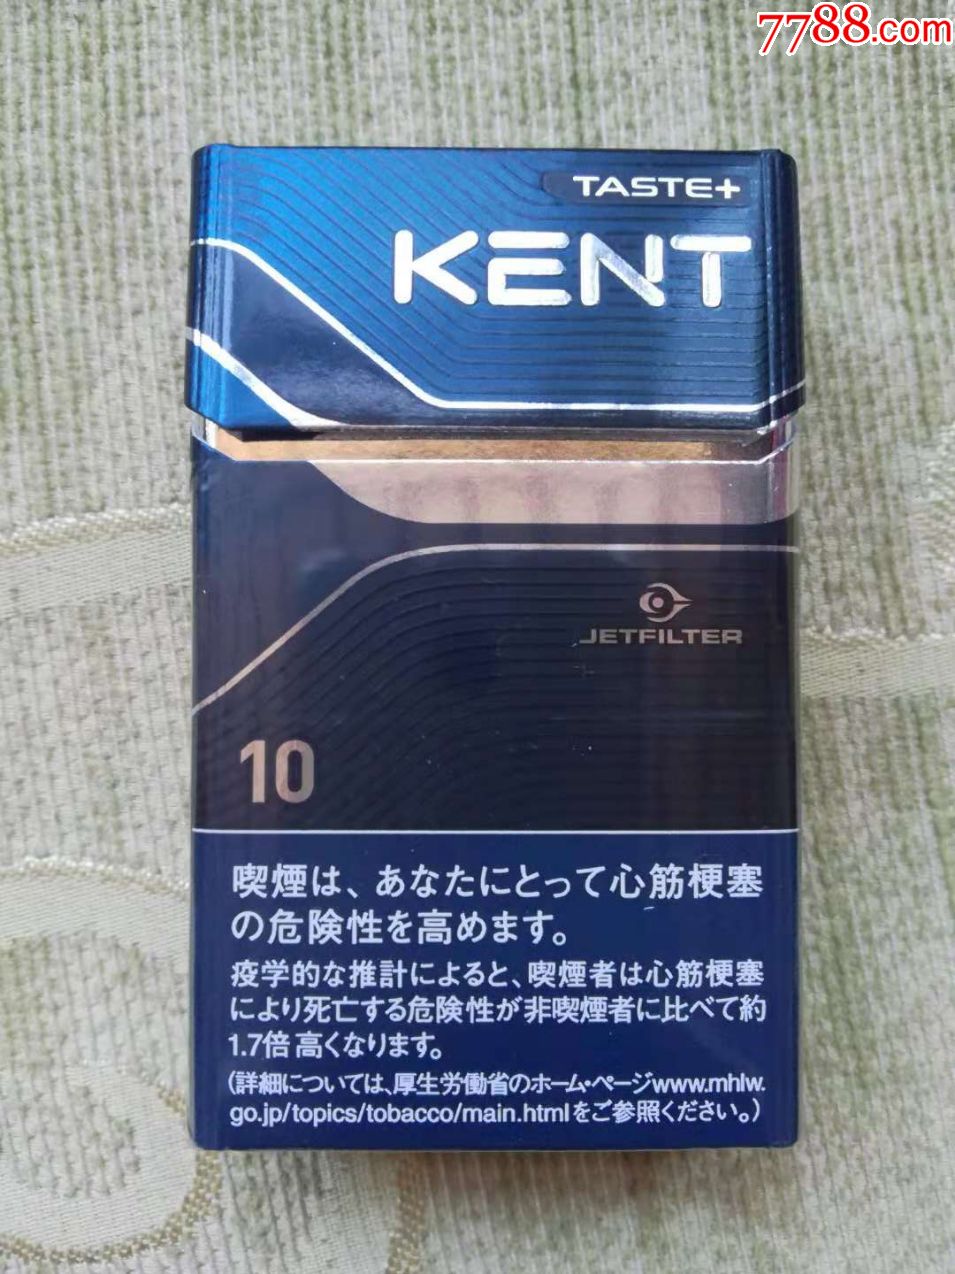 日本烟kent图片